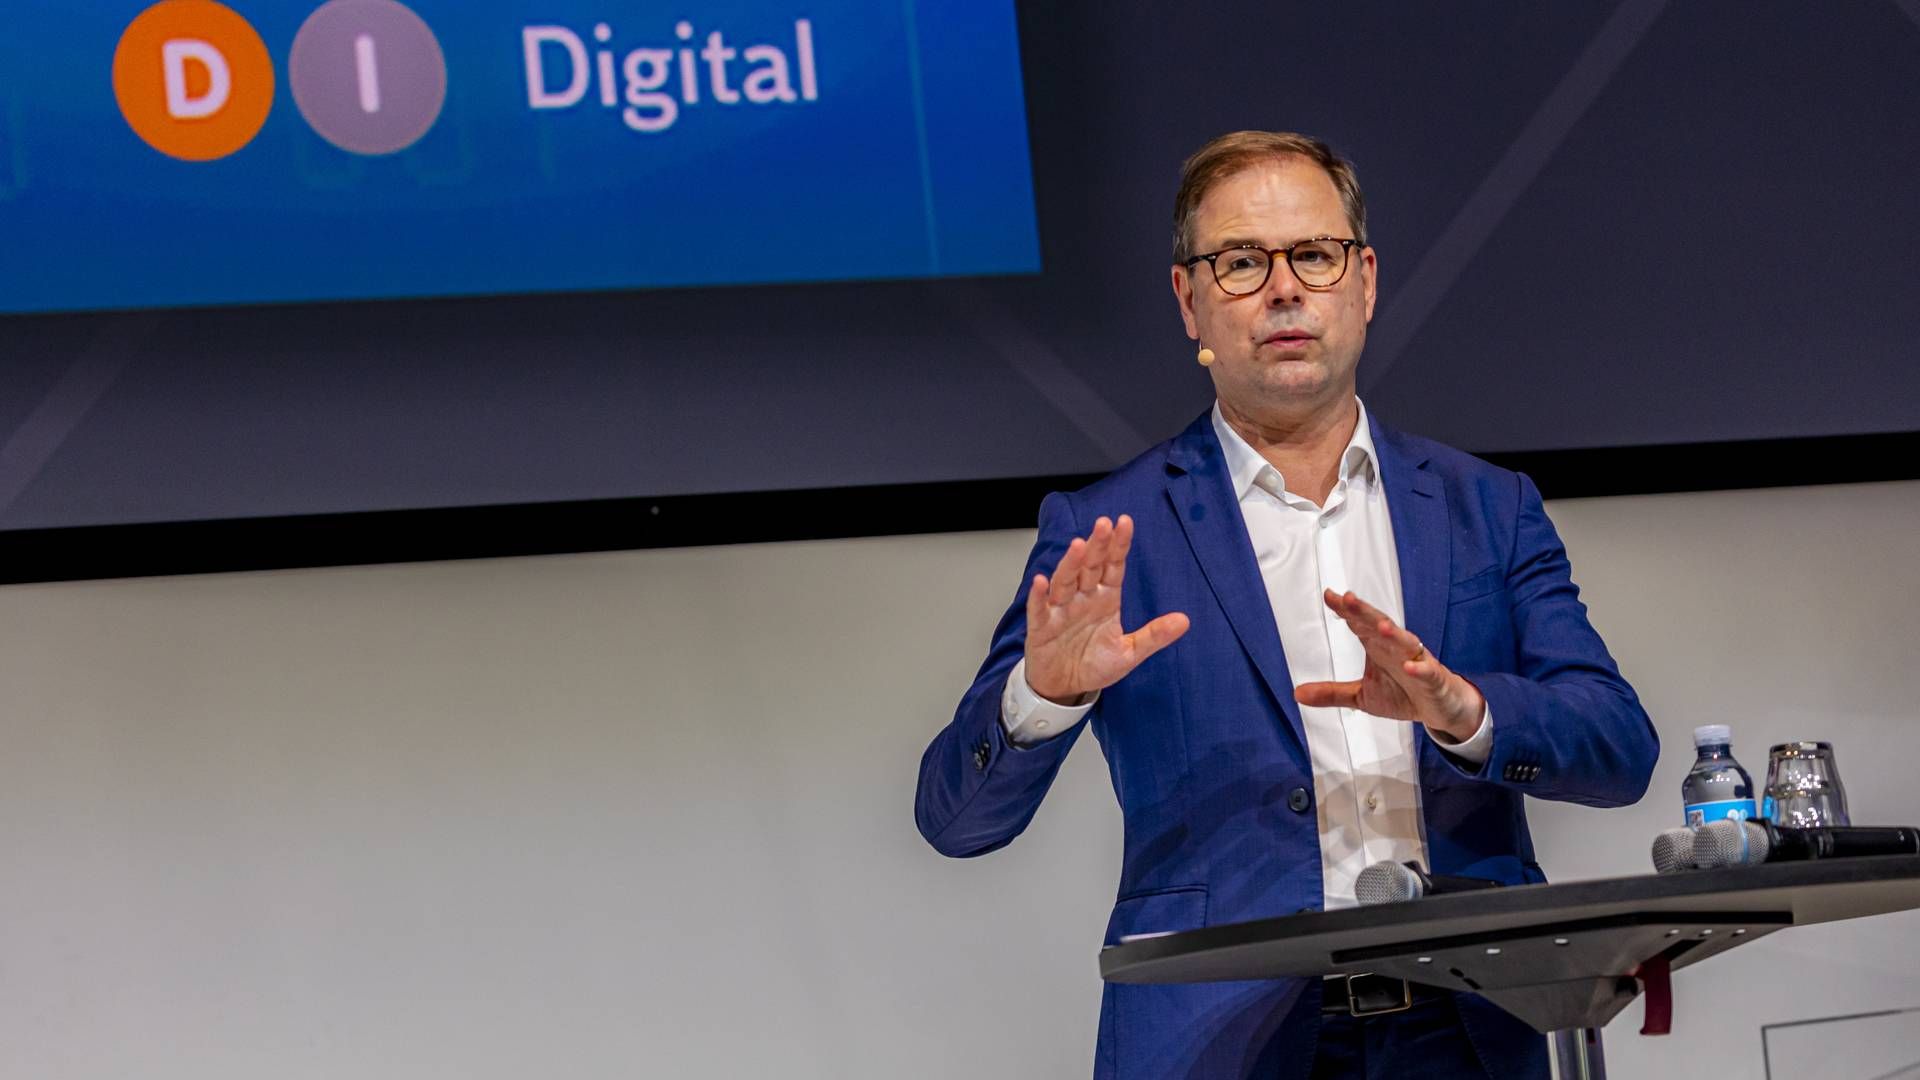 Coronakrisen har vist, hvor vigtig digitaliseringen er, sagde finansminister Nicolai Wammen blandt andet på DI Digitals årsmøde. | Foto: DI